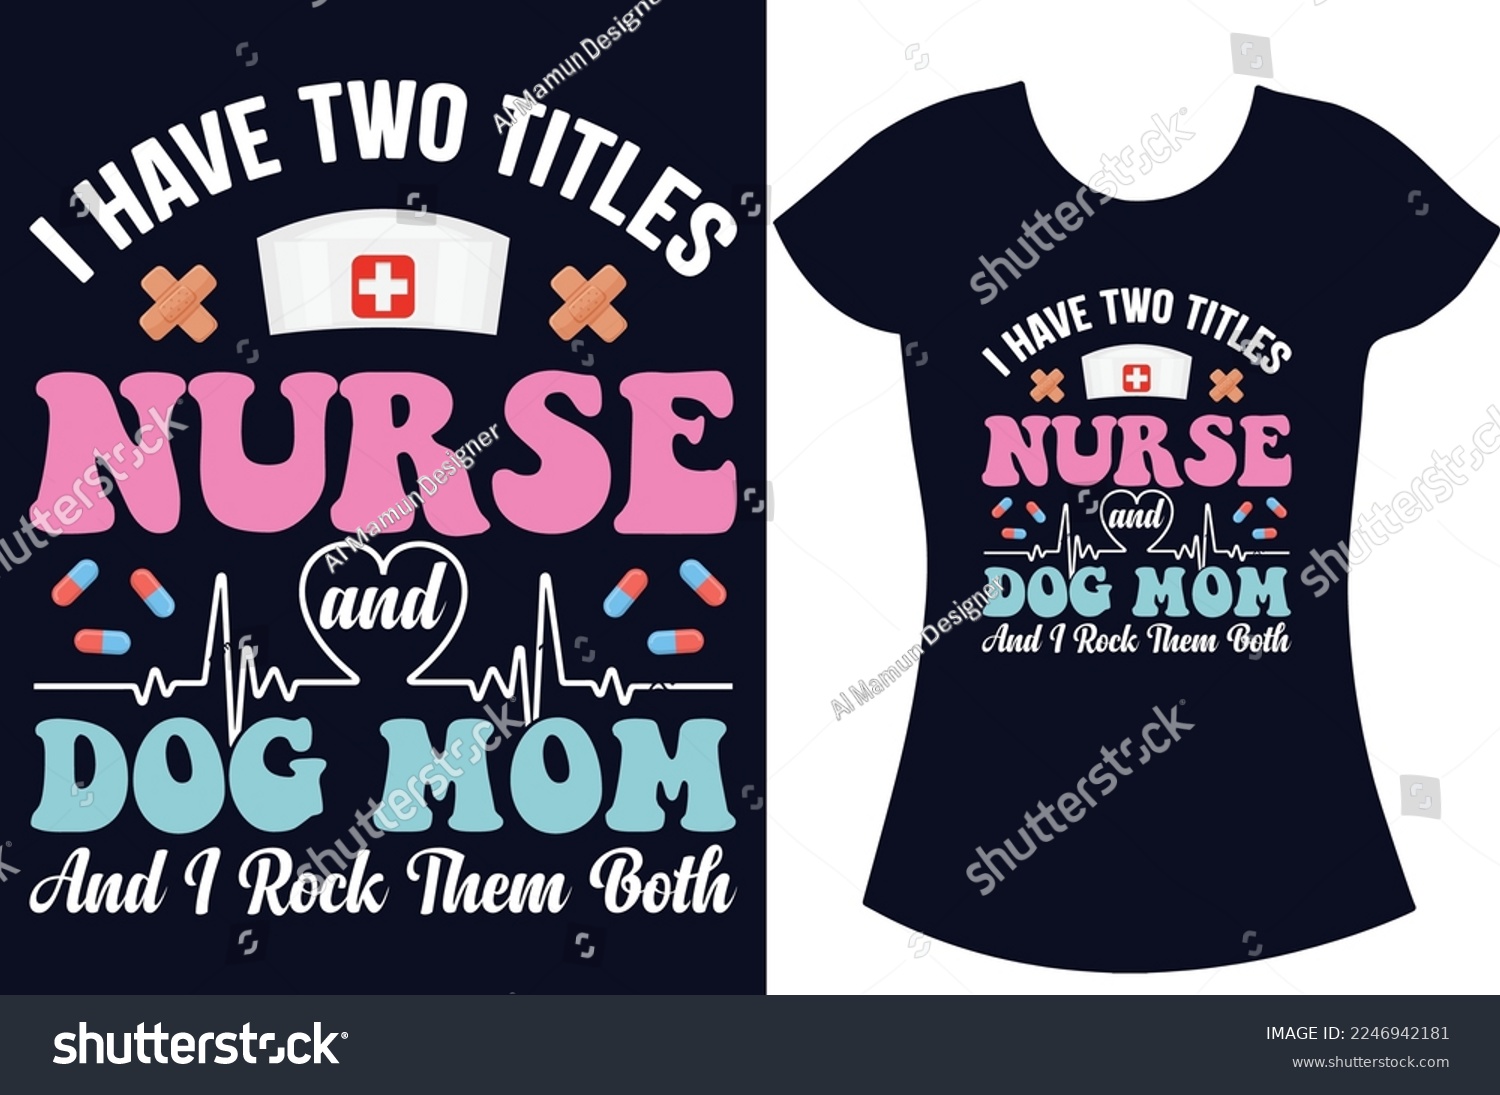 SVG of Nurse SVG typography t shirt design.Nurse shirt design, Retired-nurse and school nurse t shirt gift design. svg